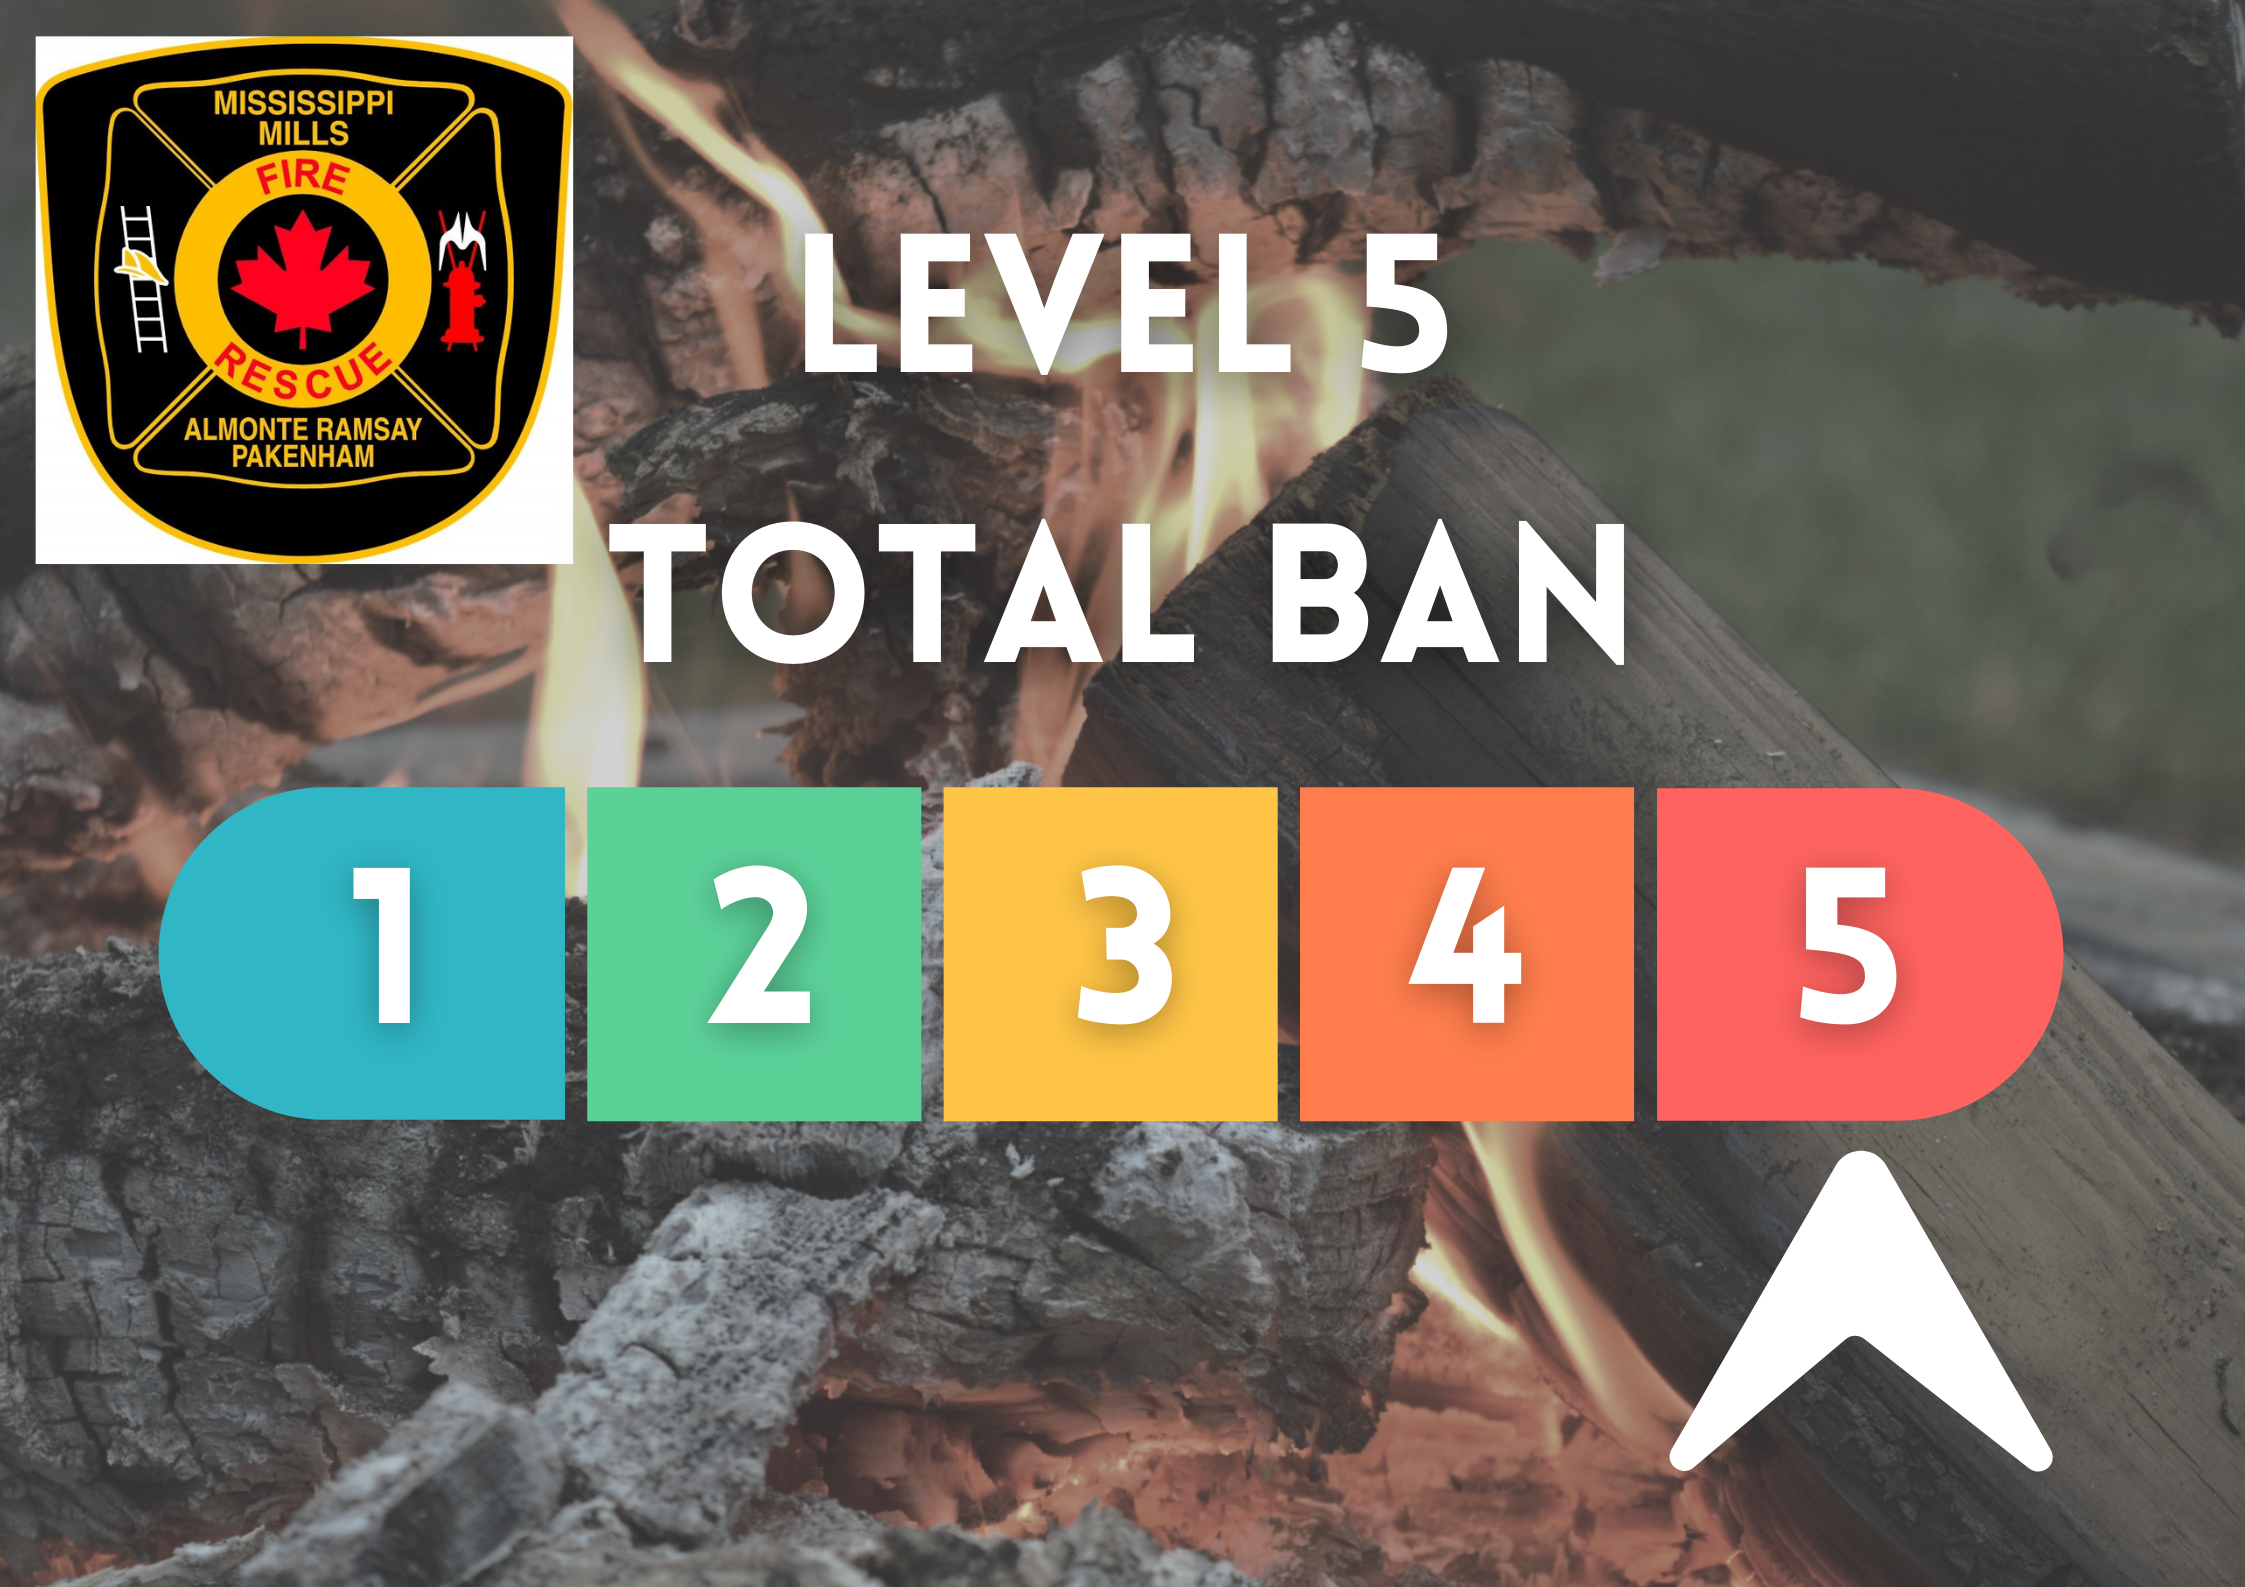 Burn Ban Level 5